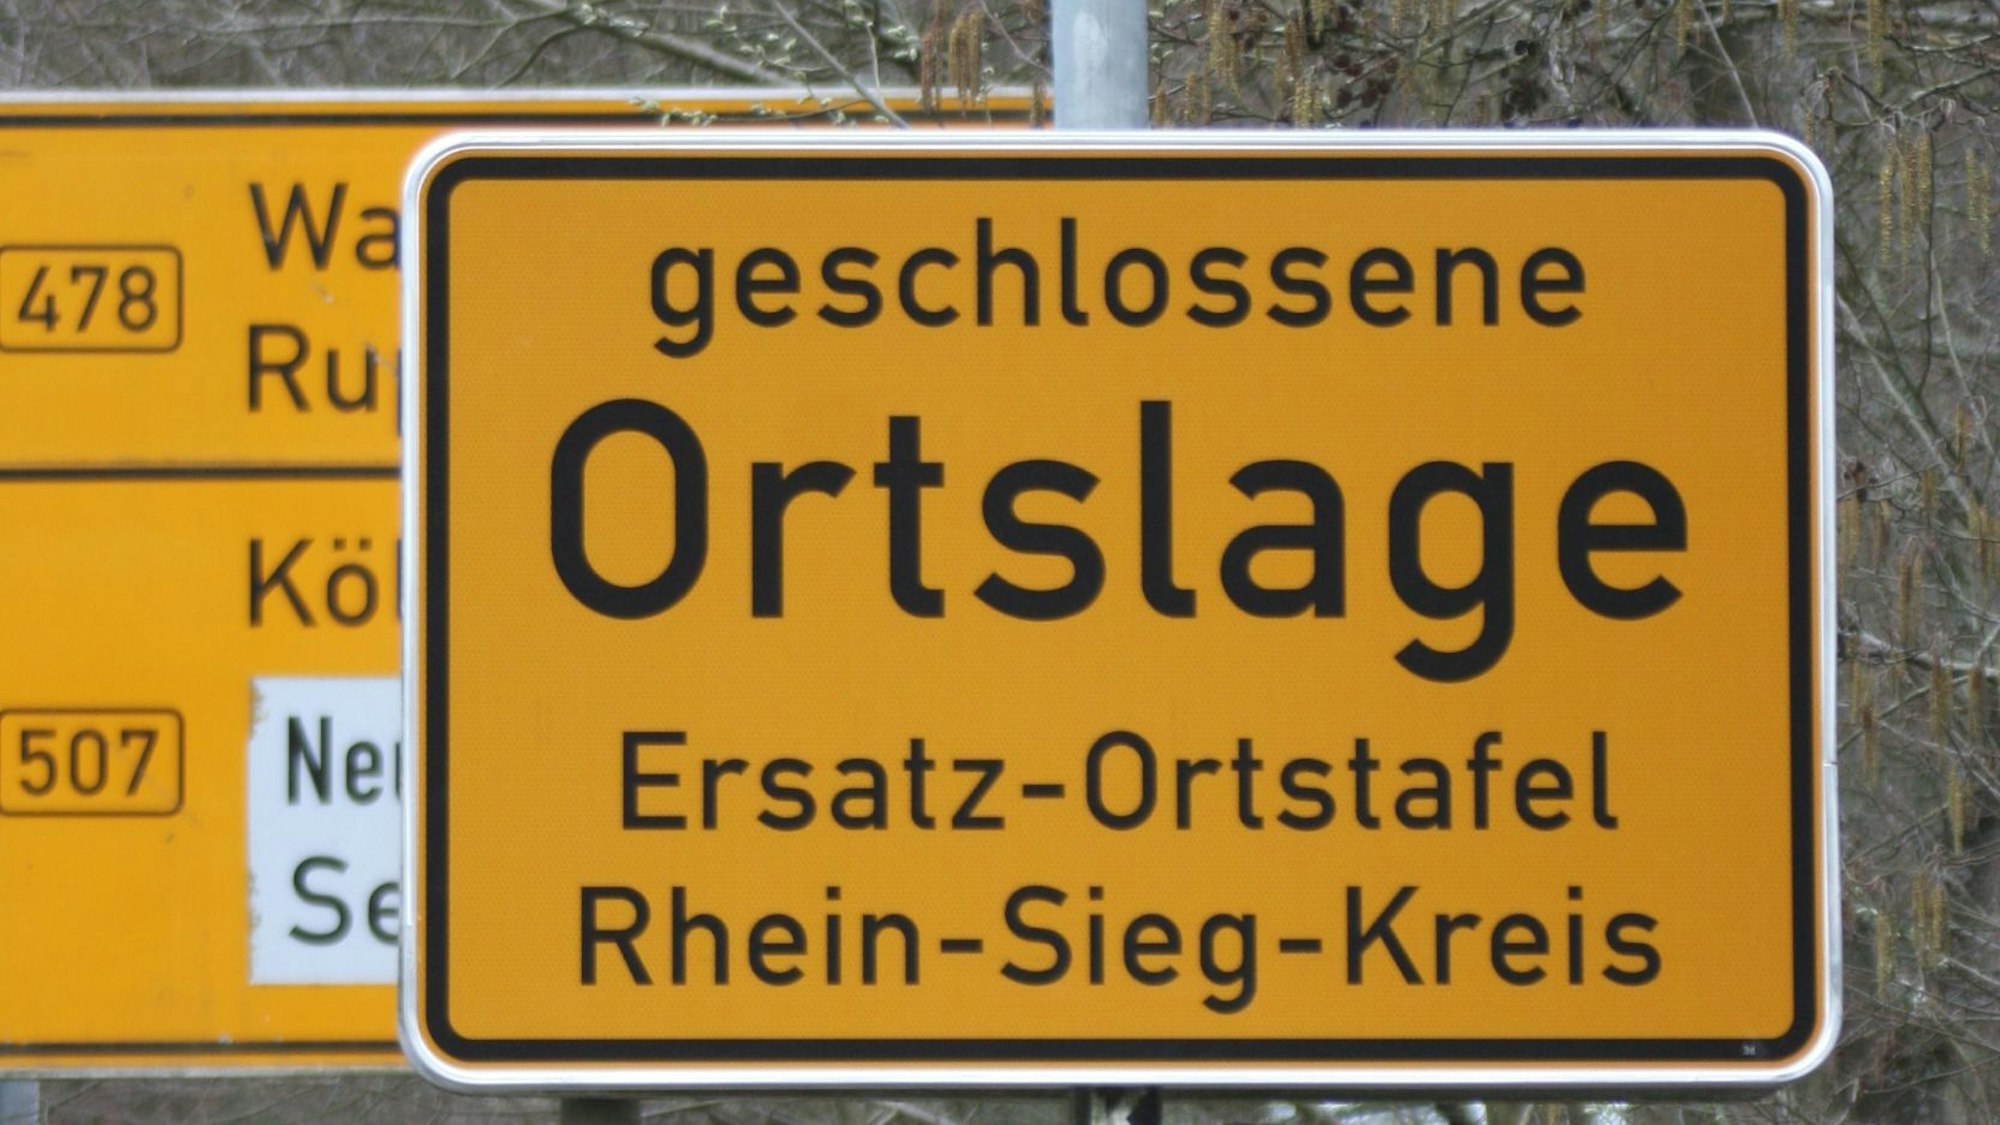 Am Ortseingang von Ingersauel haben Unbekannte das Schild gestohlen, das den Beginn der geschlossenen Ortschaft anzeigt.